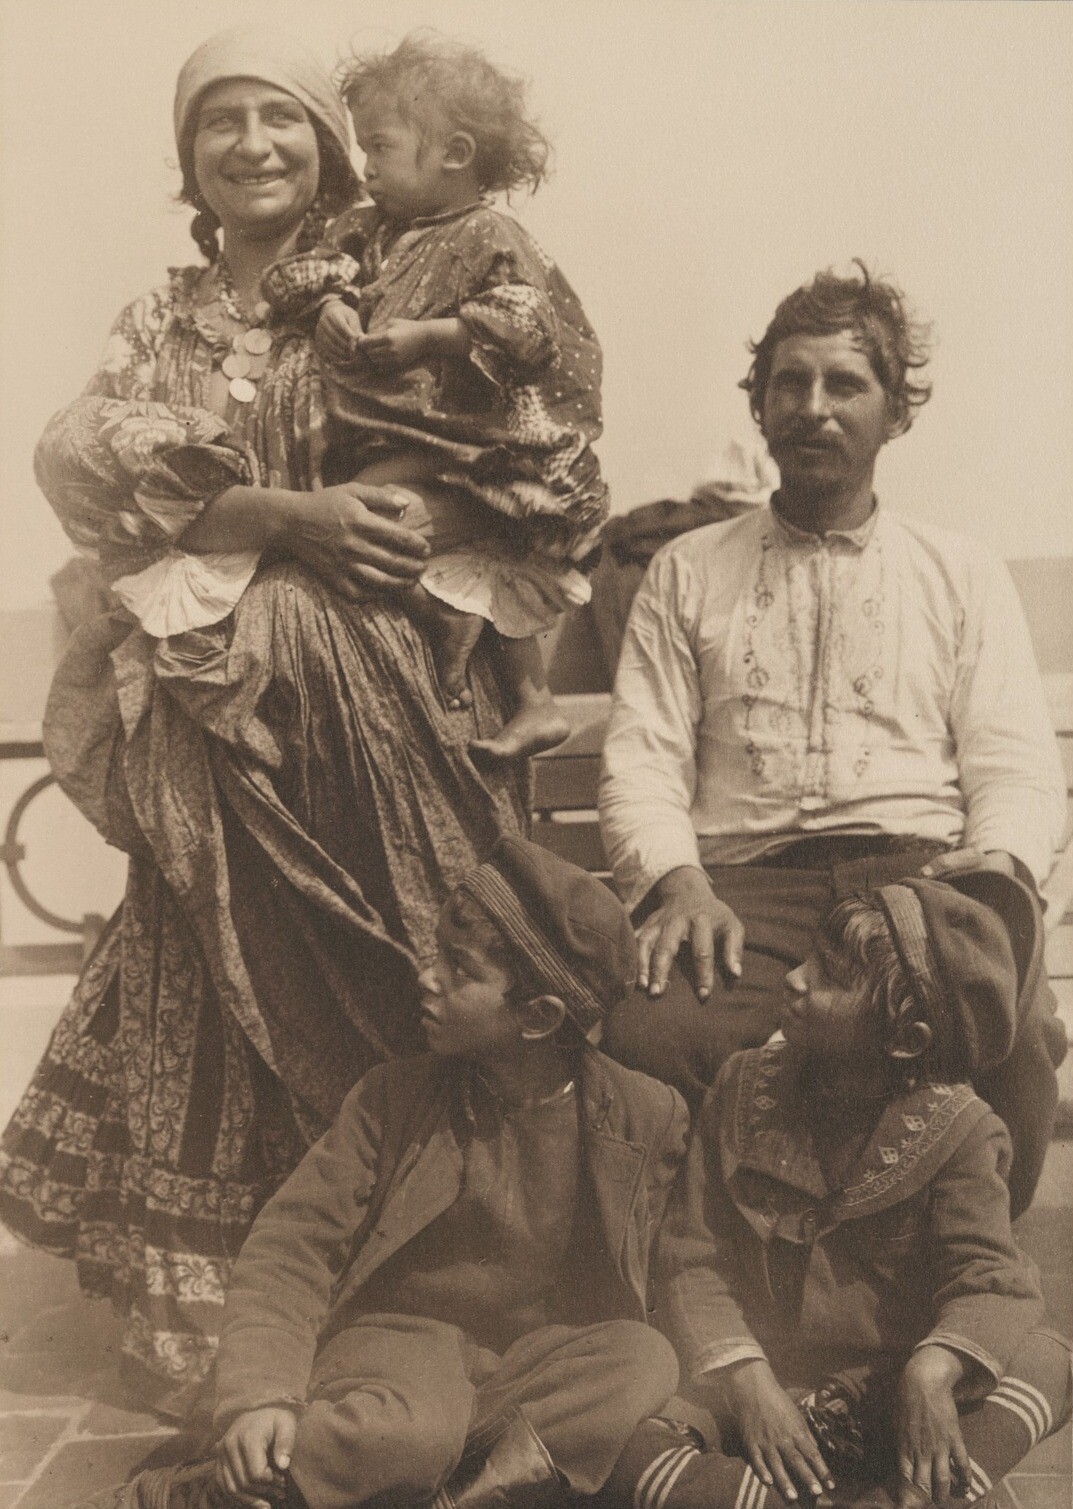 Цыганская семья. Иммиграционный пункт острова Эллис, Нью-Йорк, 1905. Фотограф Август Ф. Шерман